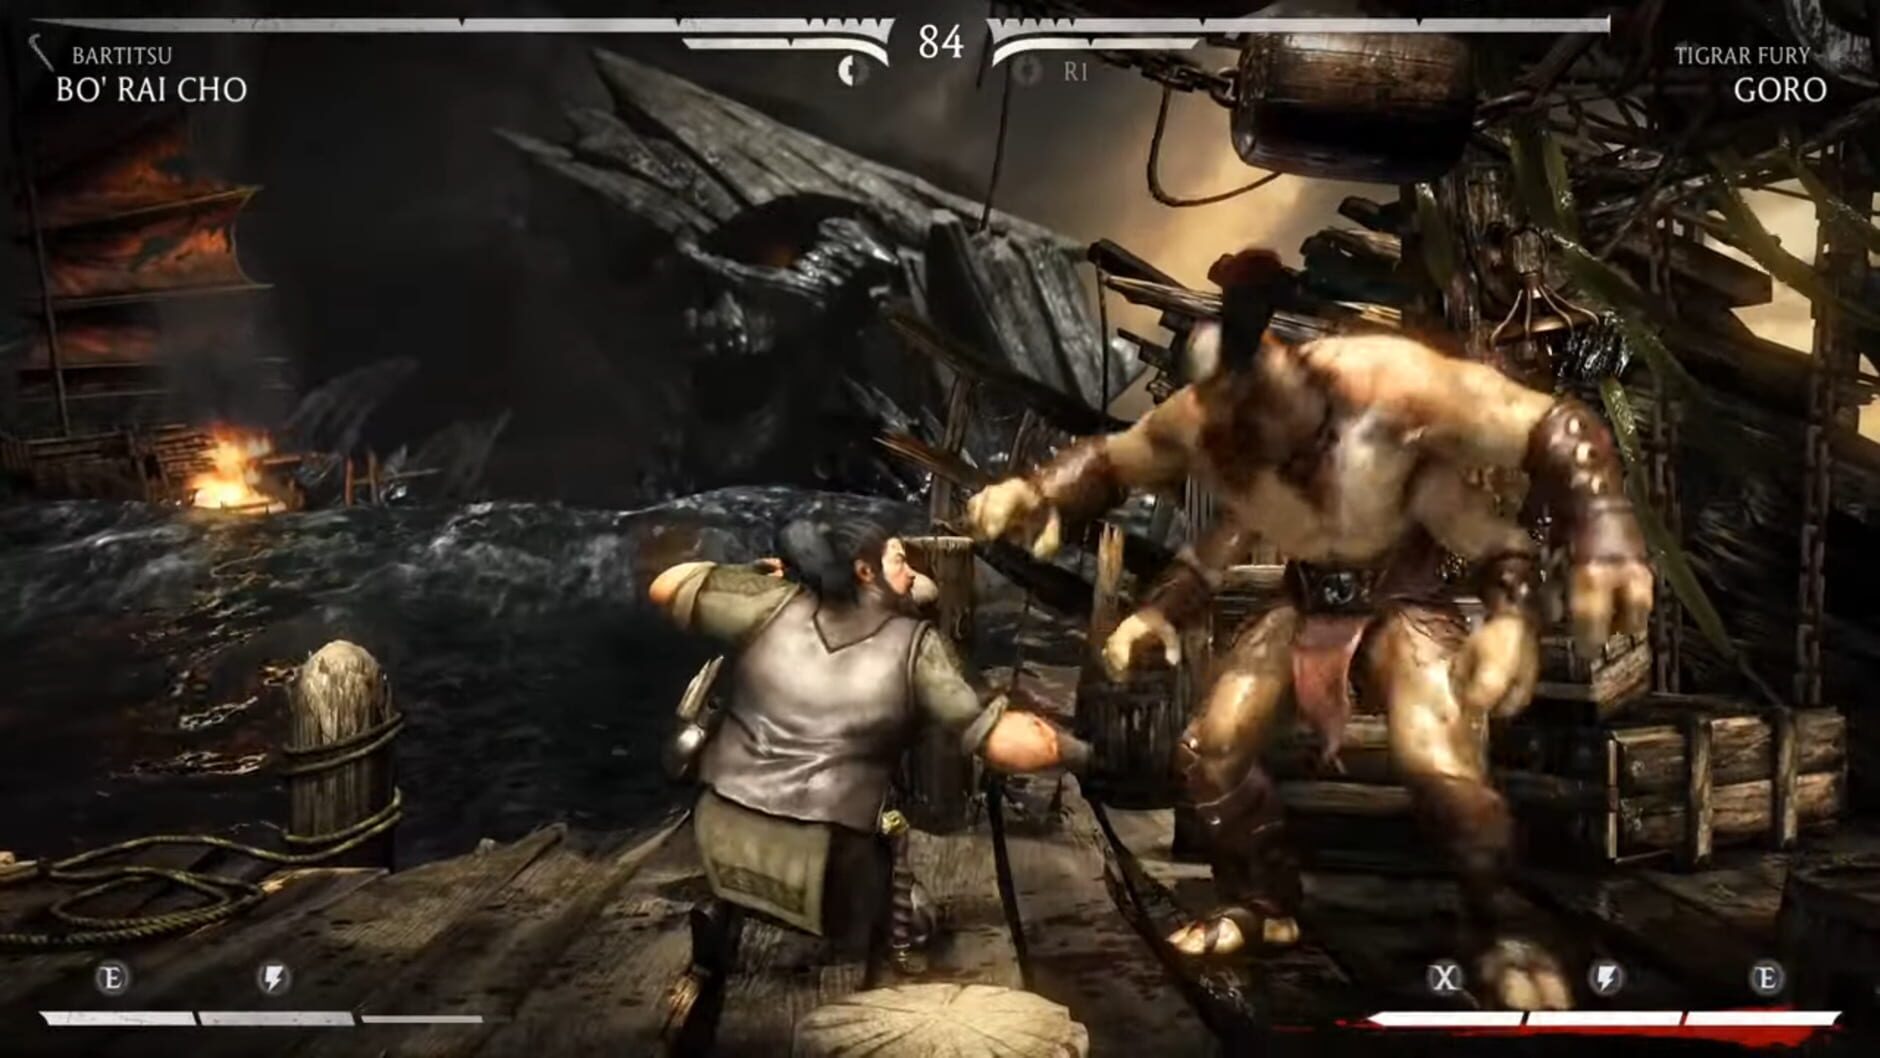 Screenshot for Mortal Kombat X: Bo' Rai Cho